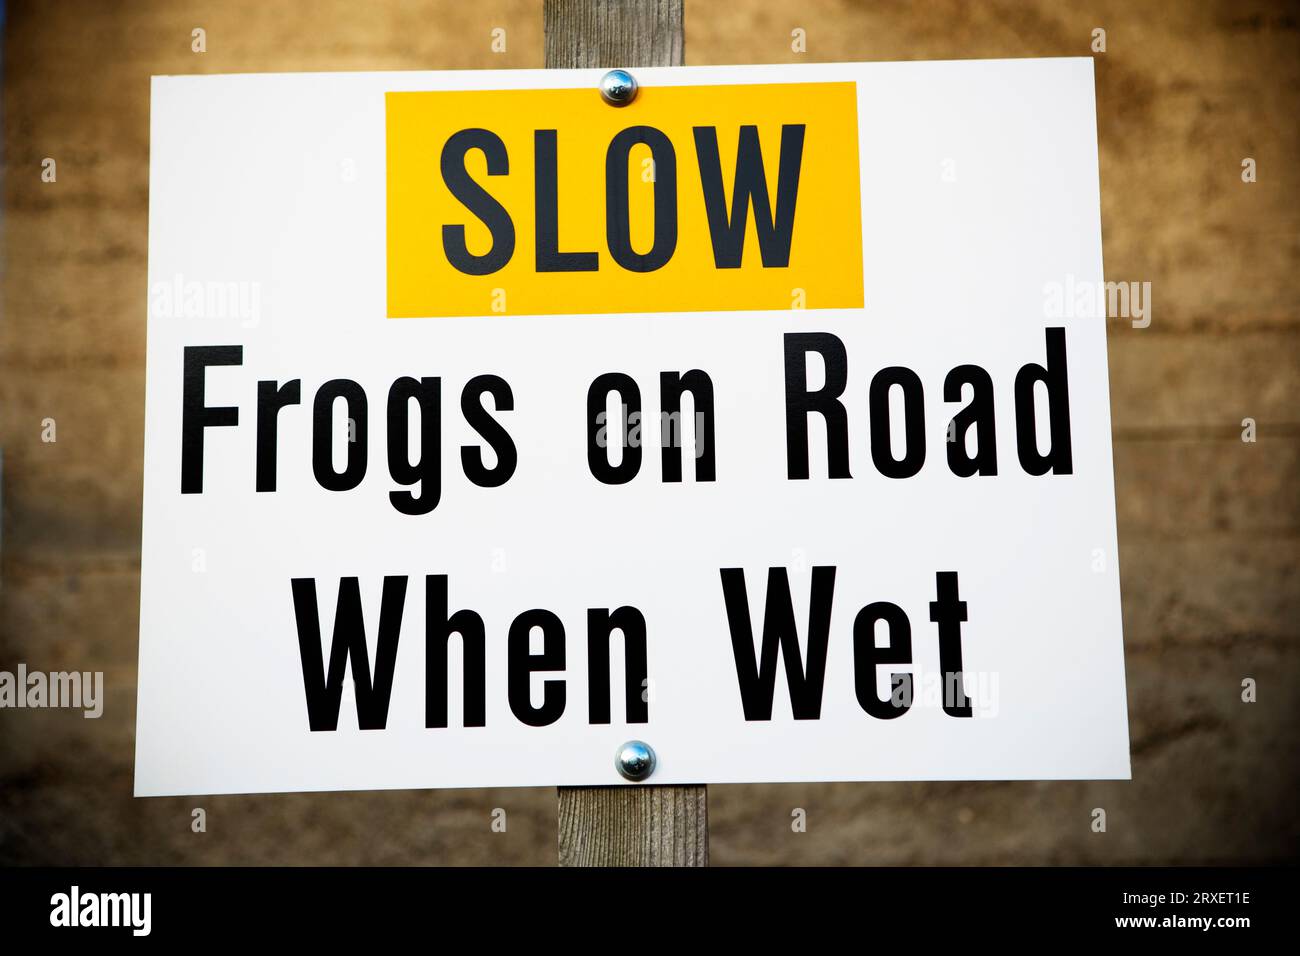 Slow grenouilles sur la route quand humide signe. Banque D'Images